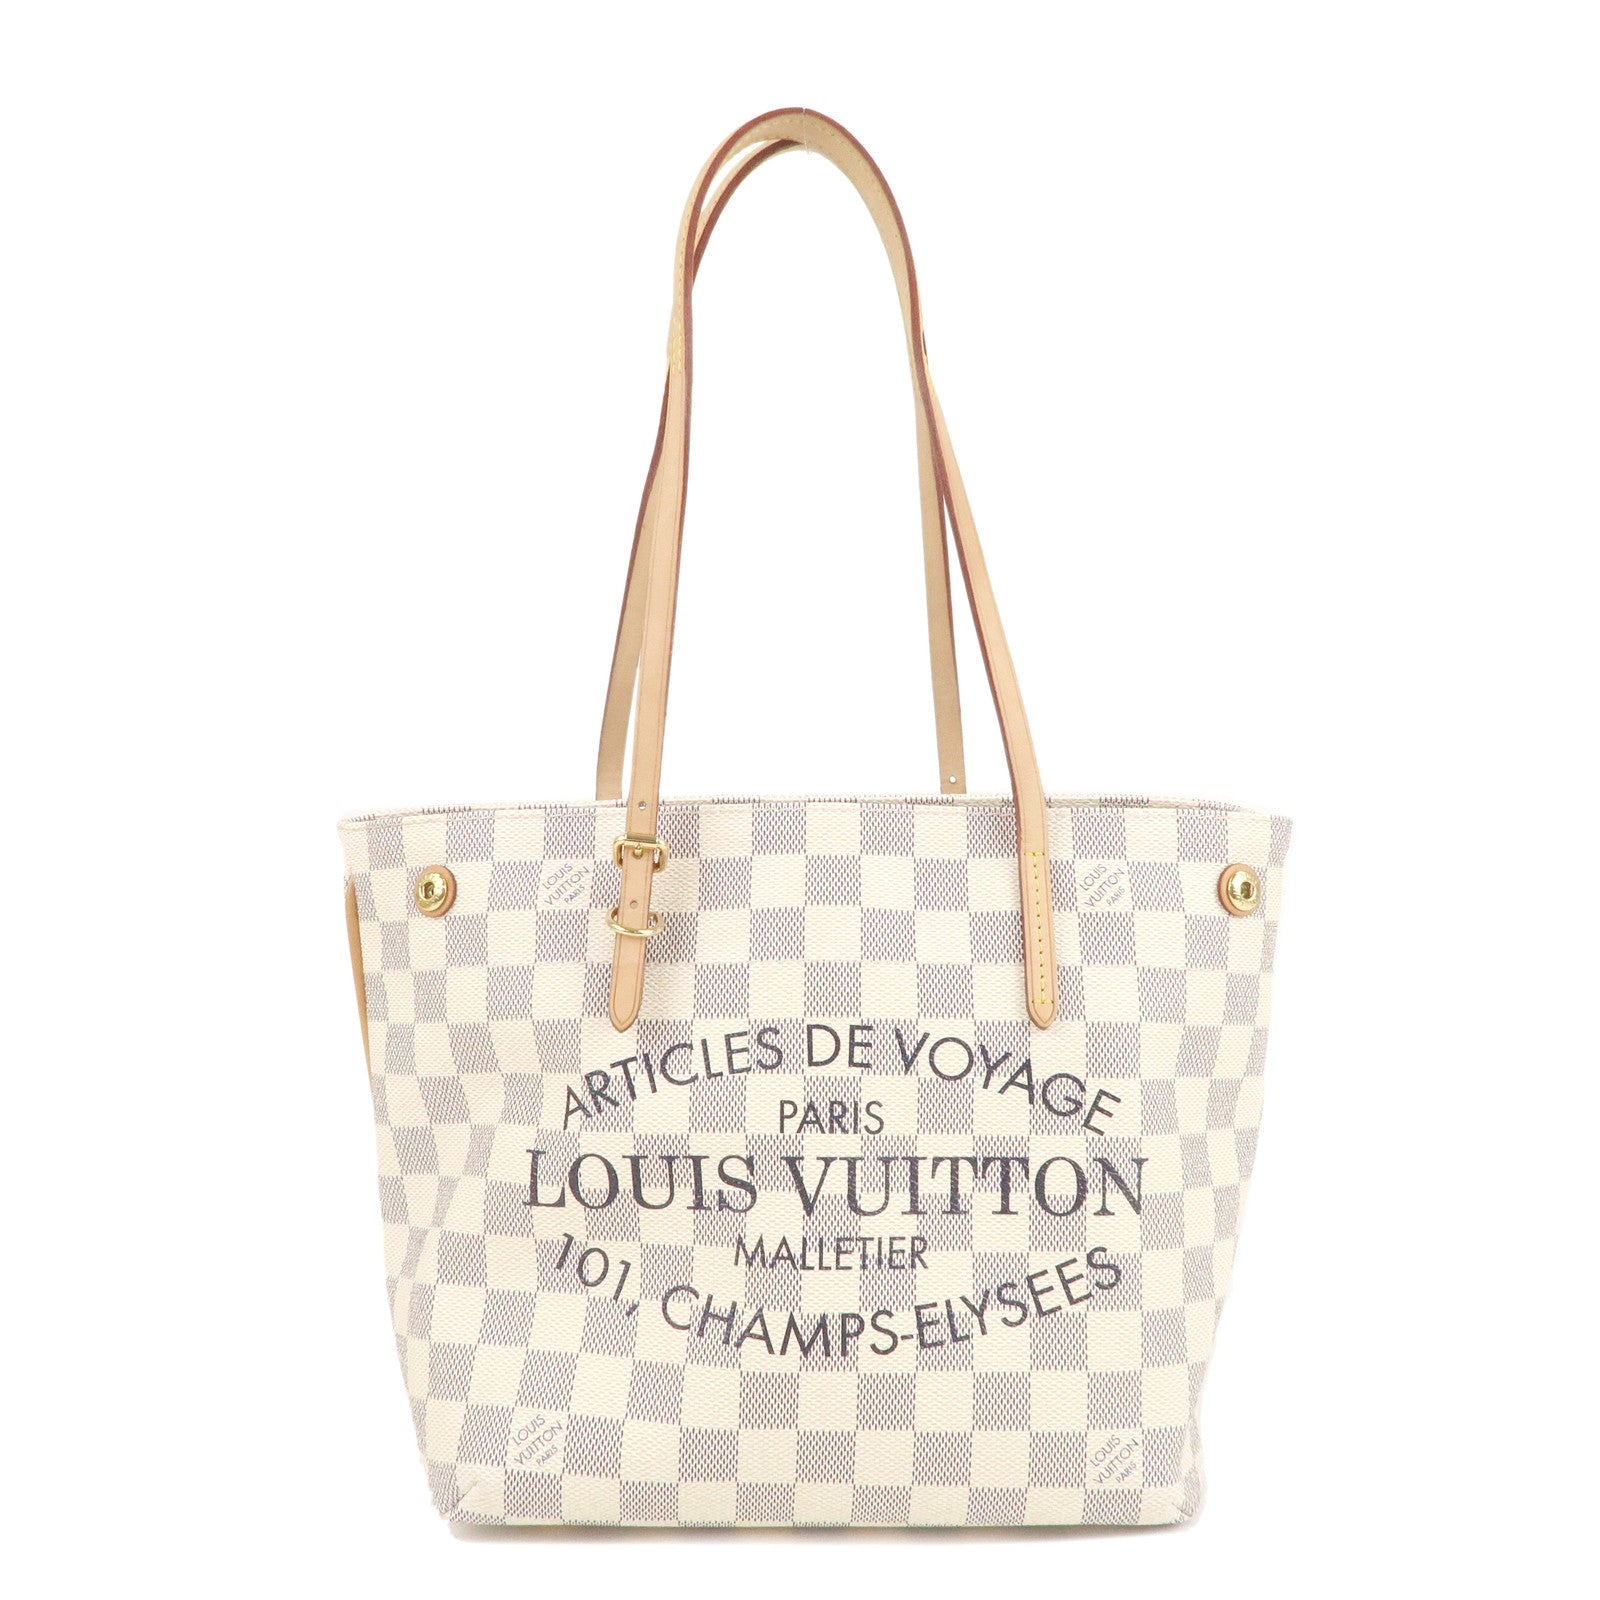 Louis Vuitton 101 Champs Elysees Paris Handbag